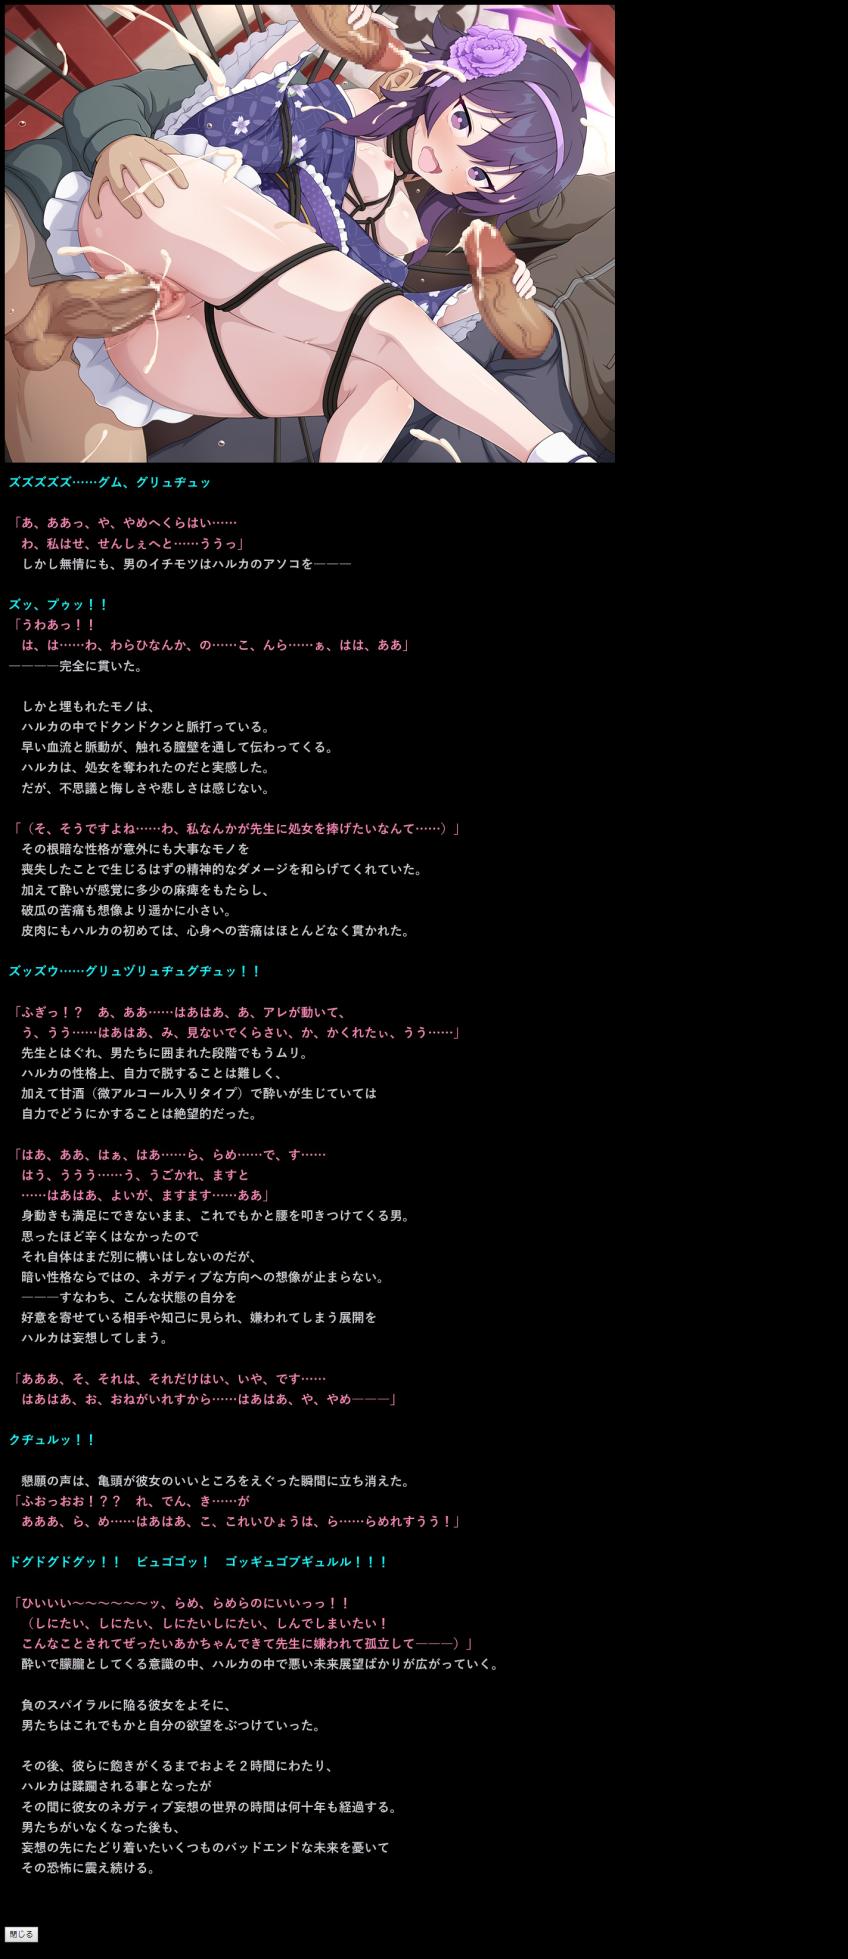 (C103) [LolitaChannel (Arigase Shinji)] Yuumei Chara Kannou Shousetsu CG Shuu No. 440!! Blue Archive 2 HaaHaa CG Shuu (Blue Archive) - Page 20